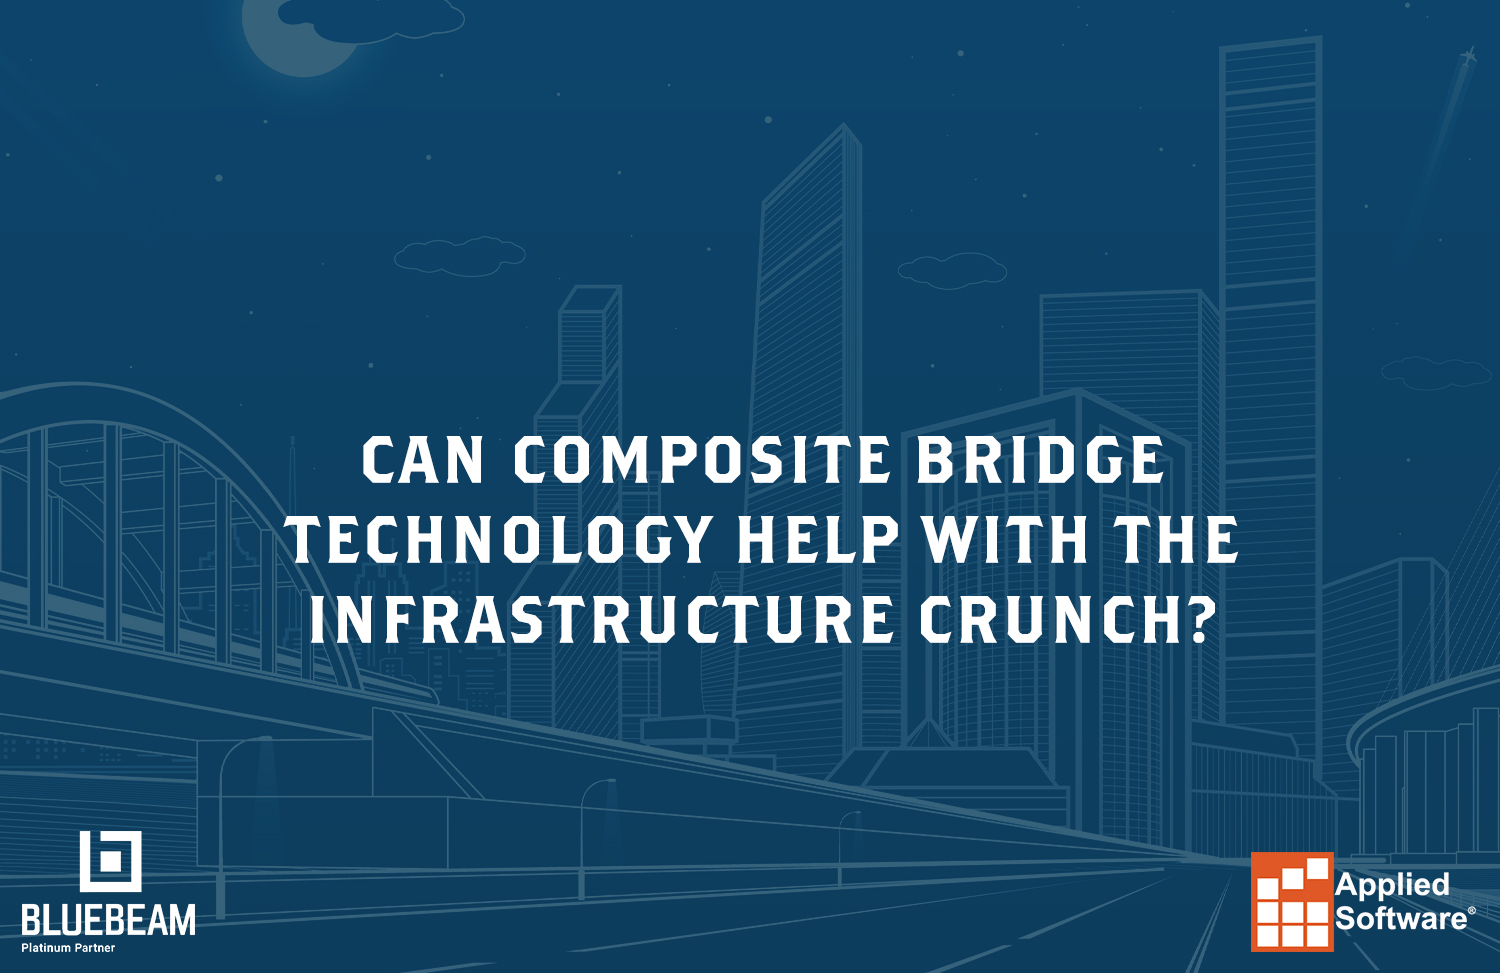 可以组合桥技术帮助基础设施危机?